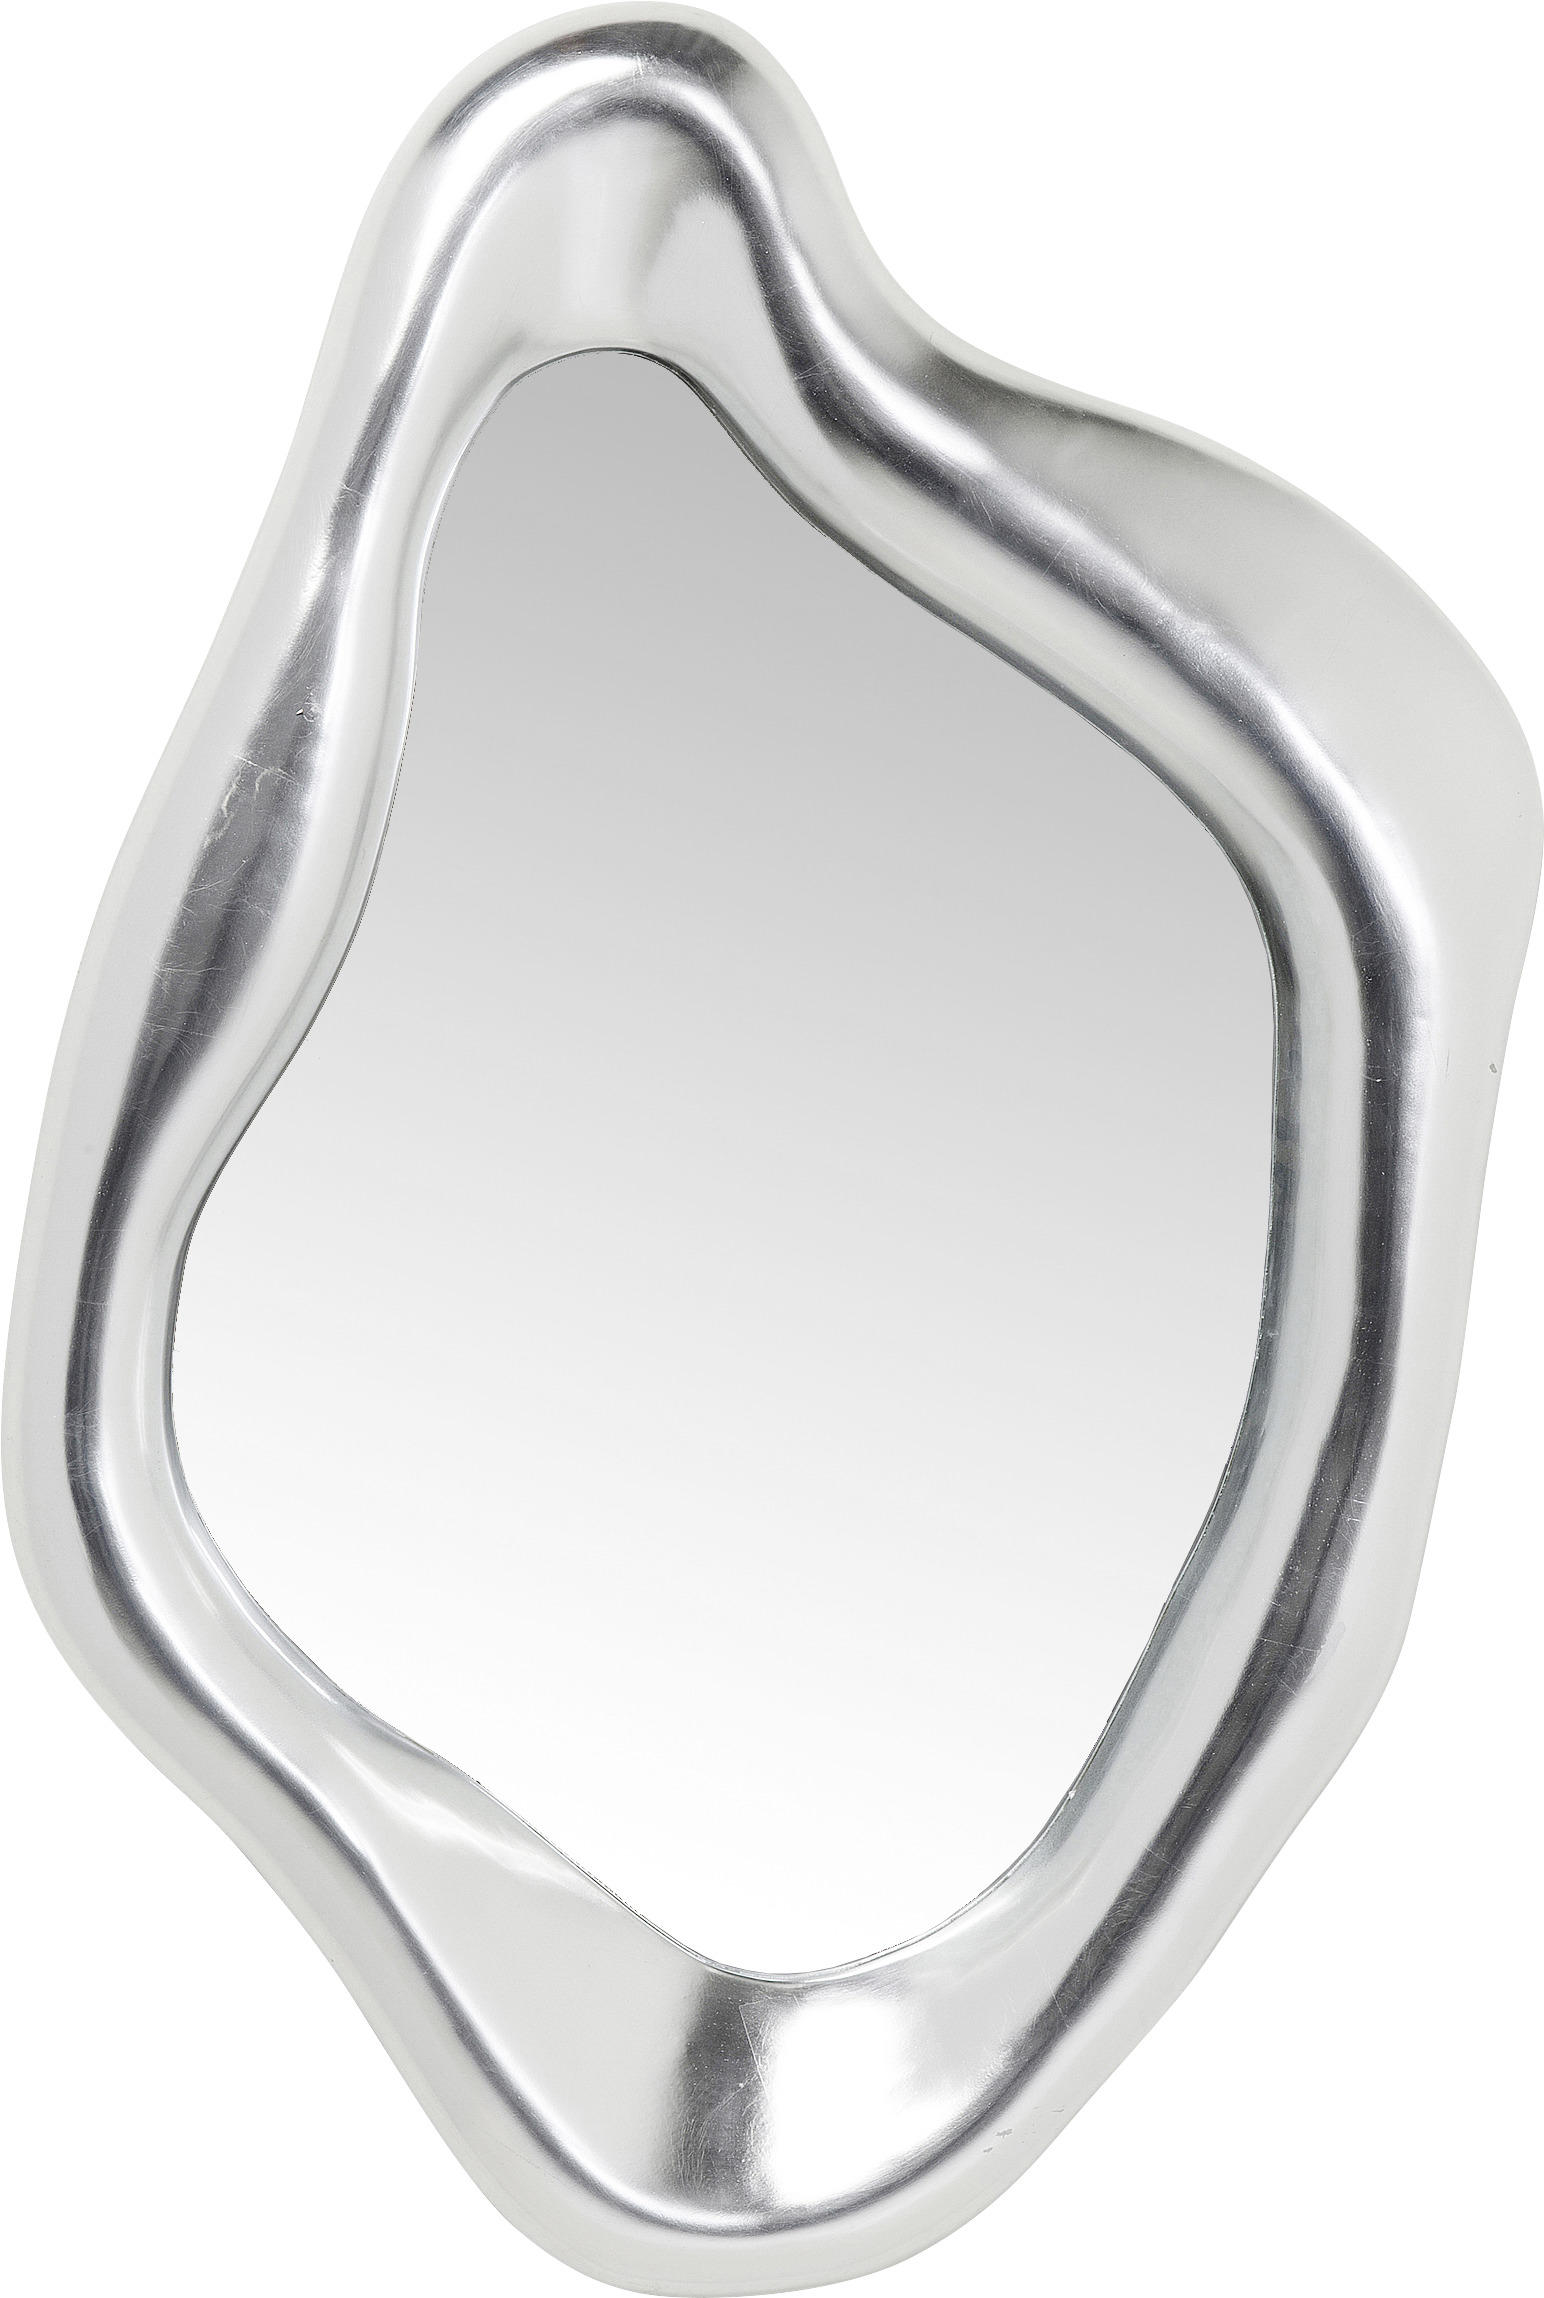 Spiegel Plexi Auto Rückspiegel Dekoration Gold*Silber K1 – die besten  Artikel im Online-Shop Joom Geek